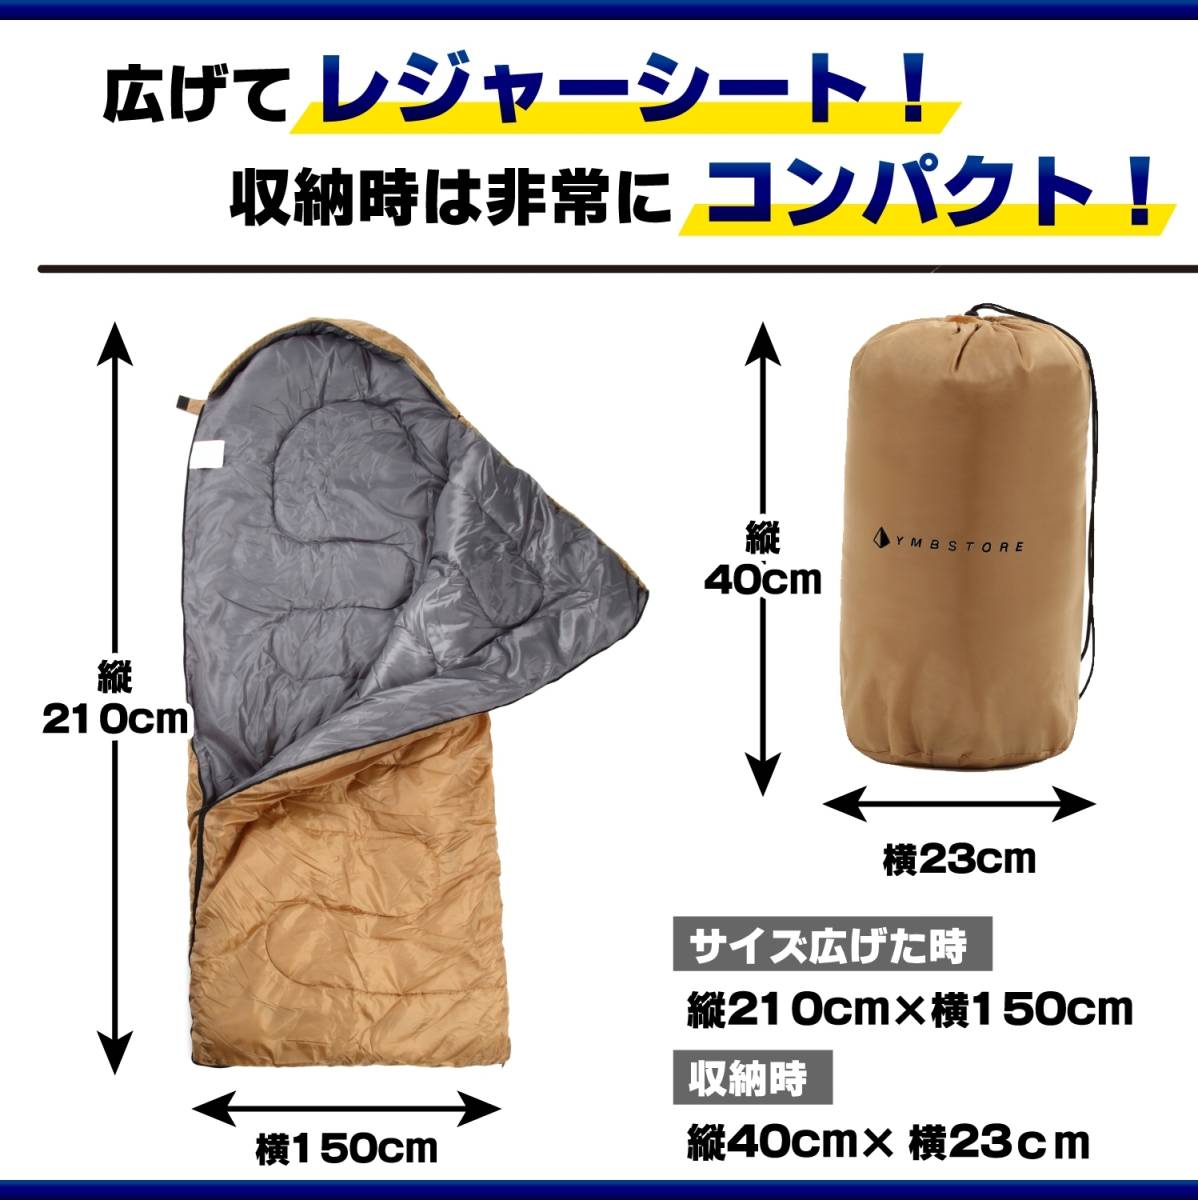 YMBSTORE sleeping bag envelope type sleeping bag waterproof coyote Coleman naan ga naan ga